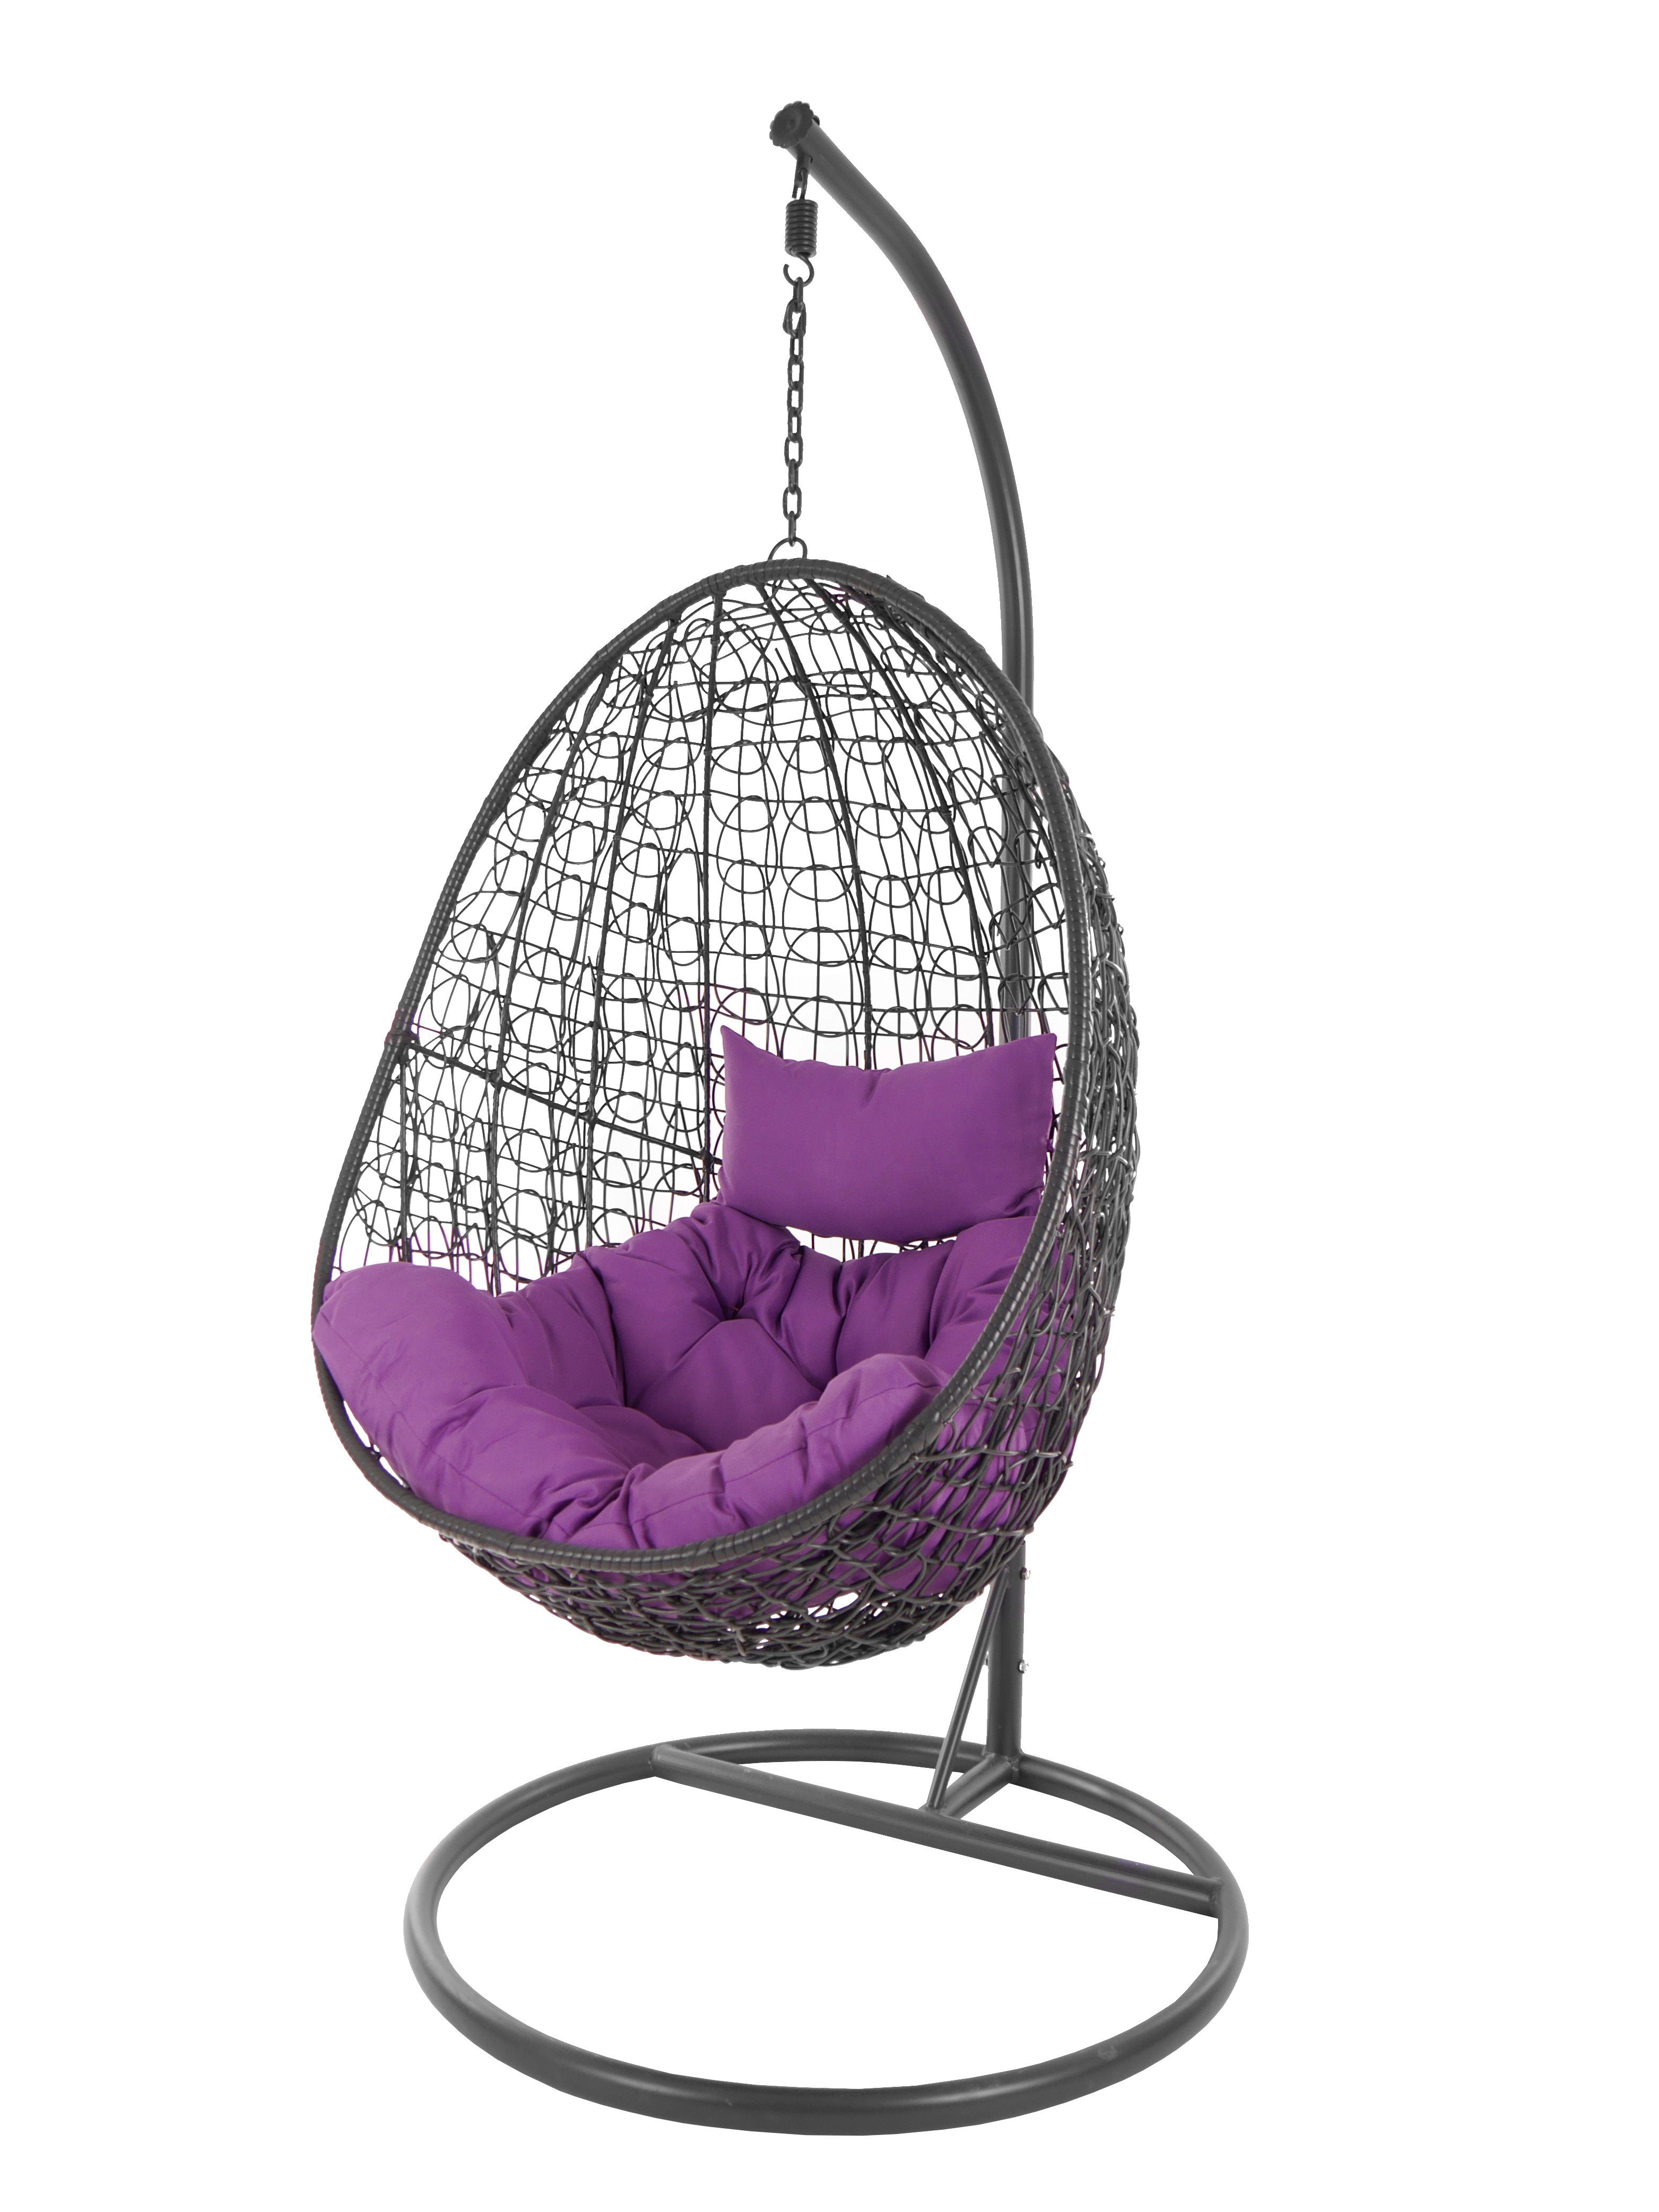 KIDEO Hängesessel Hängesessel Capdepera Chair, lila moderner und Loungemöbel anthrazit, violet) Gestell Schwebesessel Swing mit (4050 Kissen